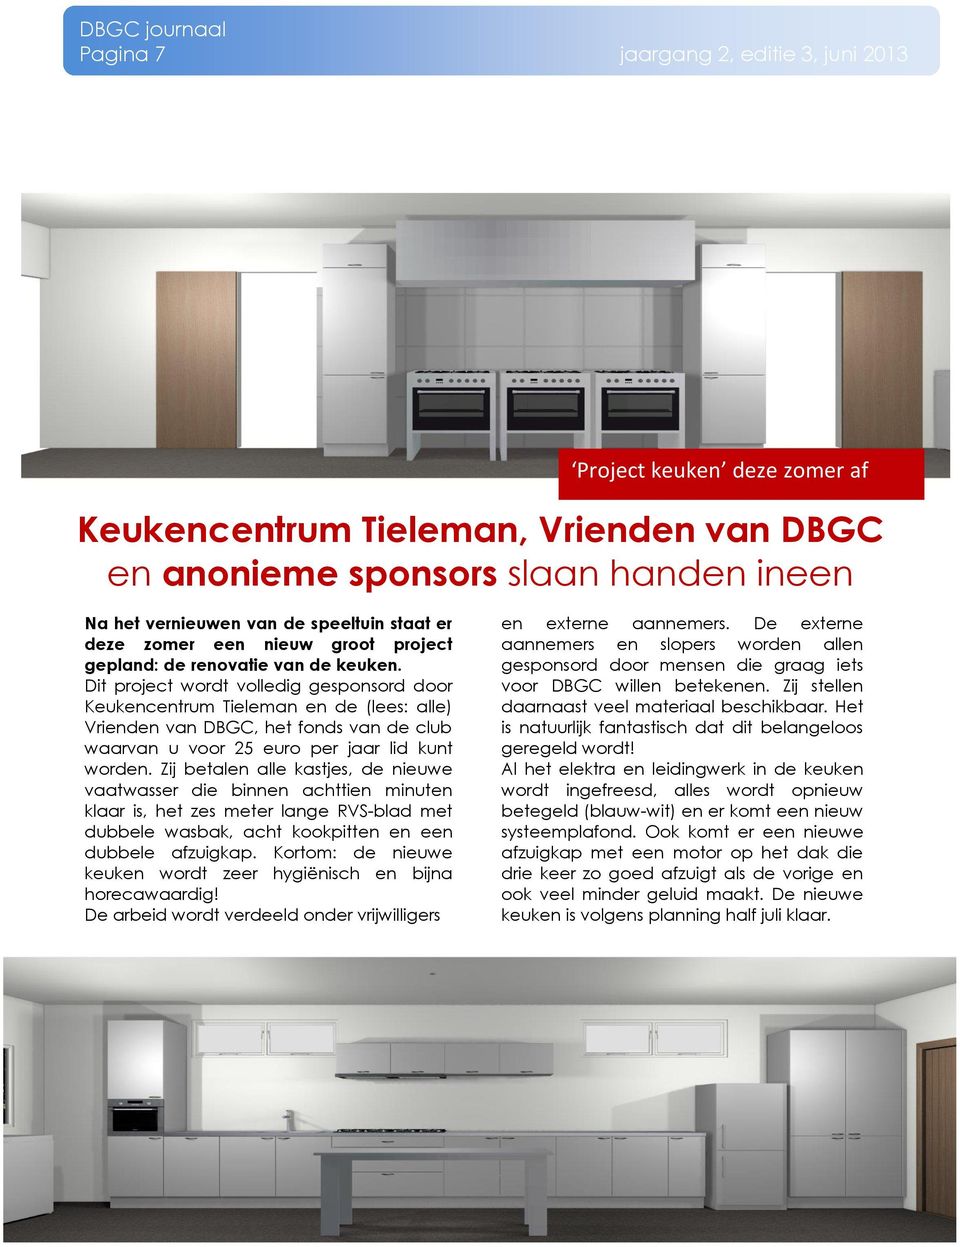 Dit project wordt volledig gesponsord door Keukencentrum Tieleman en de (lees: alle) Vrienden van DBGC, het fonds van de club waarvan u voor 25 euro per jaar lid kunt worden.